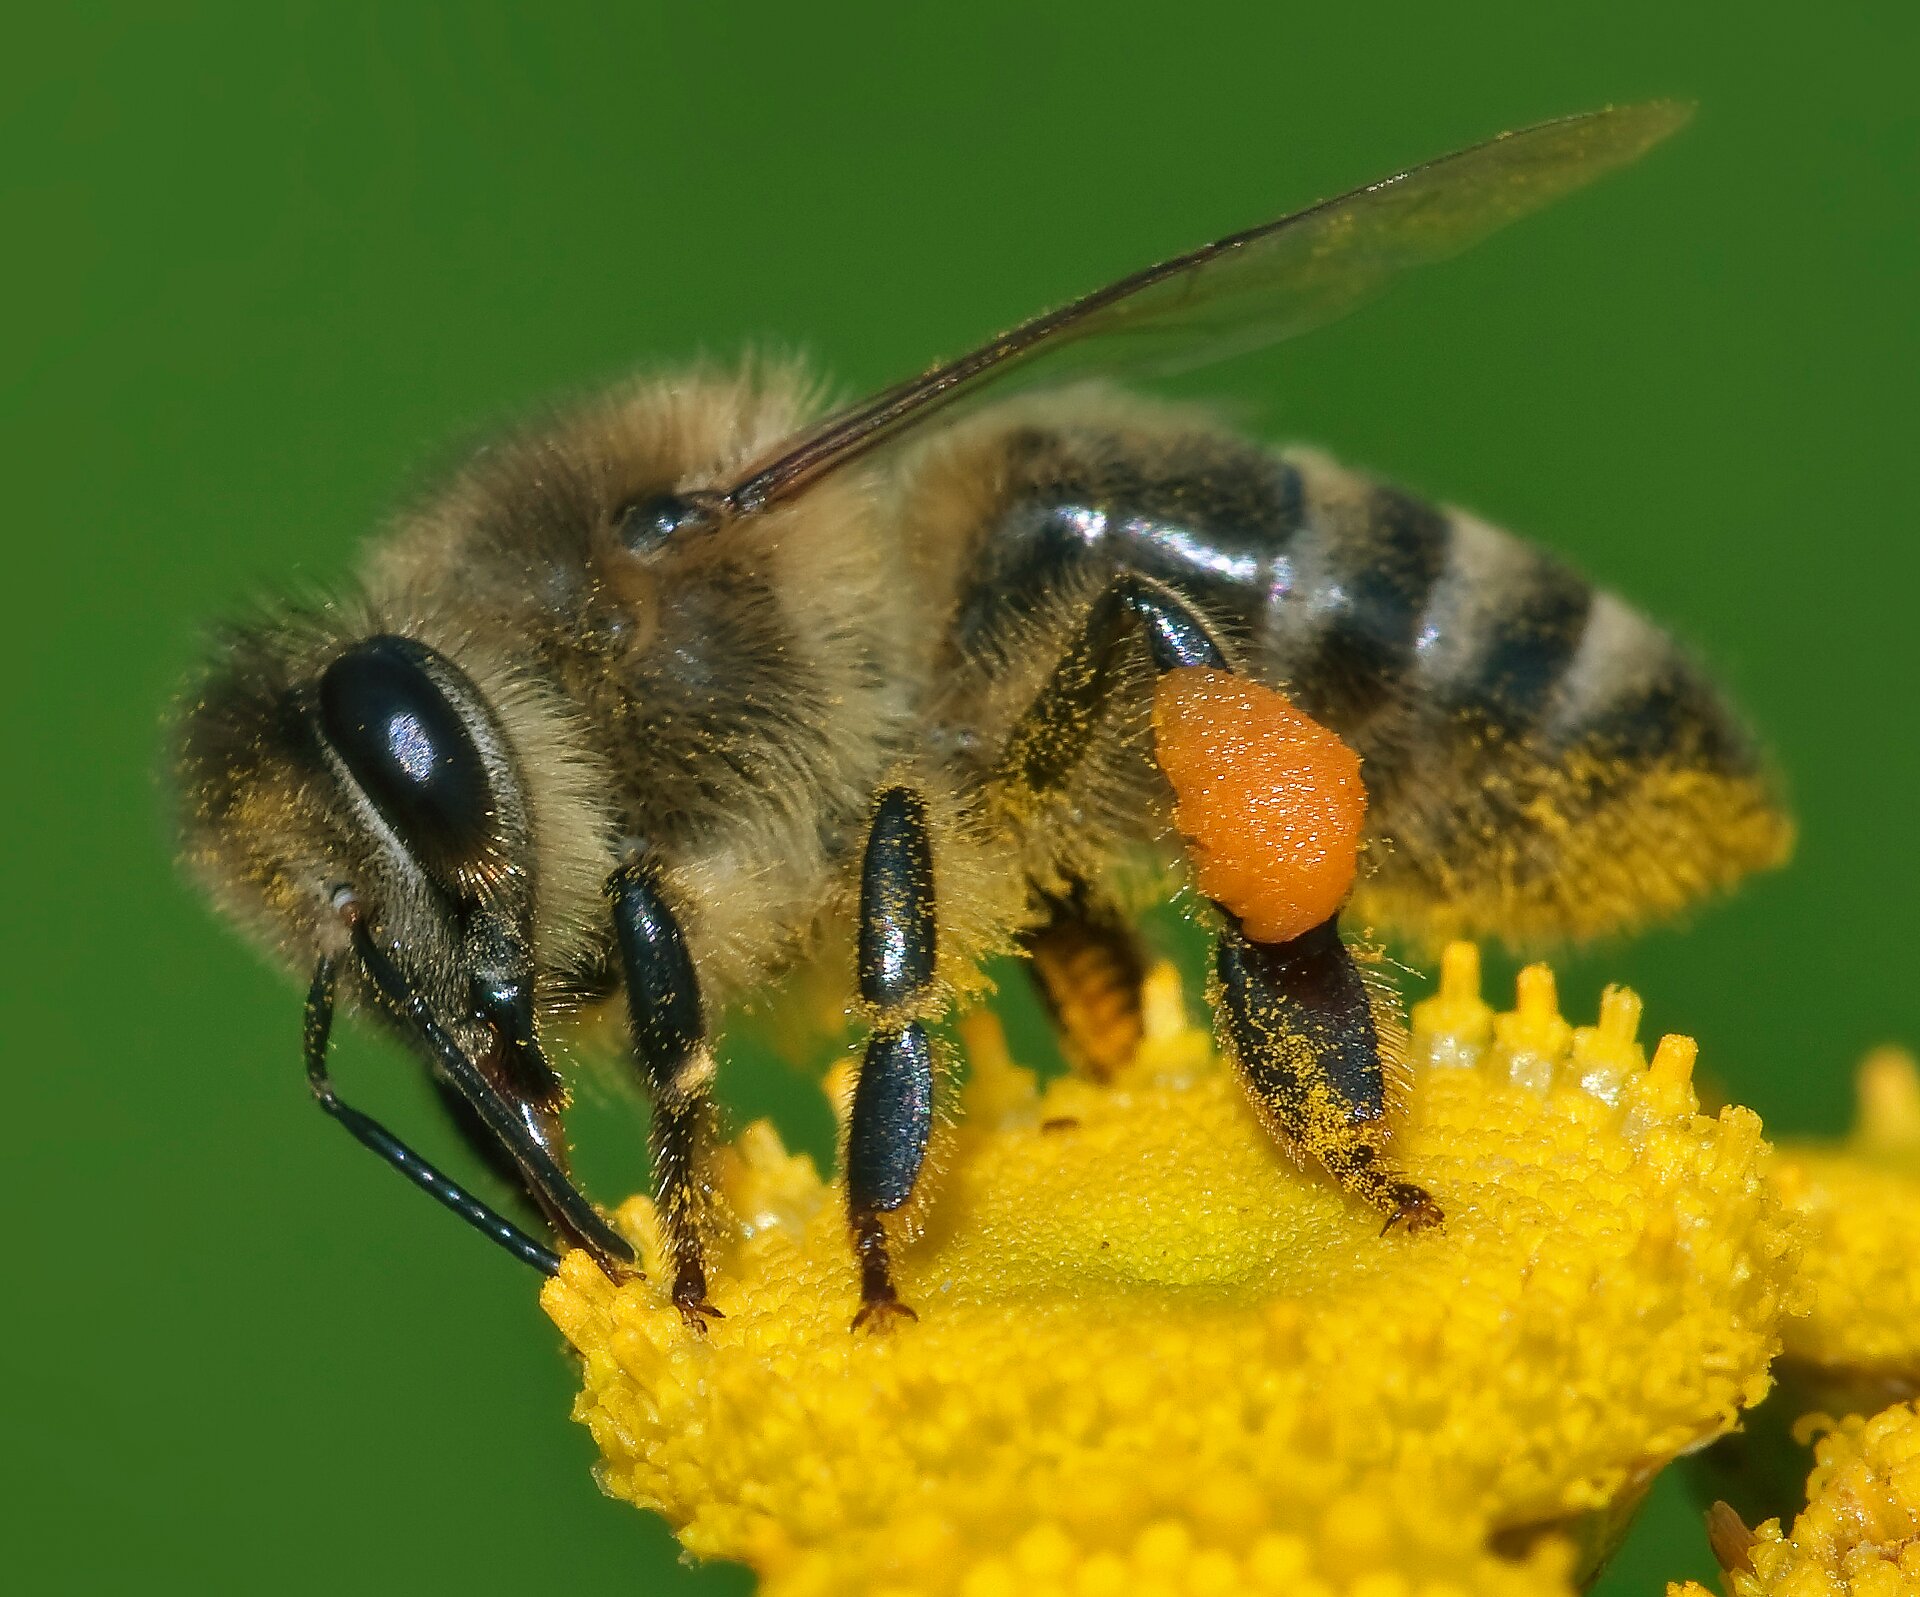 Na zdjęciu przedstawiona jest pszczoła miodna spoczywająca na żółtym kwiecie. Jej ciało jest żółto‑czarne, podzielone na trzy odcinki: głowę, tułów i odwłok. Głowa pochylona jest w dół, znajdują się na niej duże oczy złożone i jedna para czułków. Na odcinku tułowiowym ma 2 pary przezroczystych skrzydeł. Ma trzy pary odnóży krocznych.